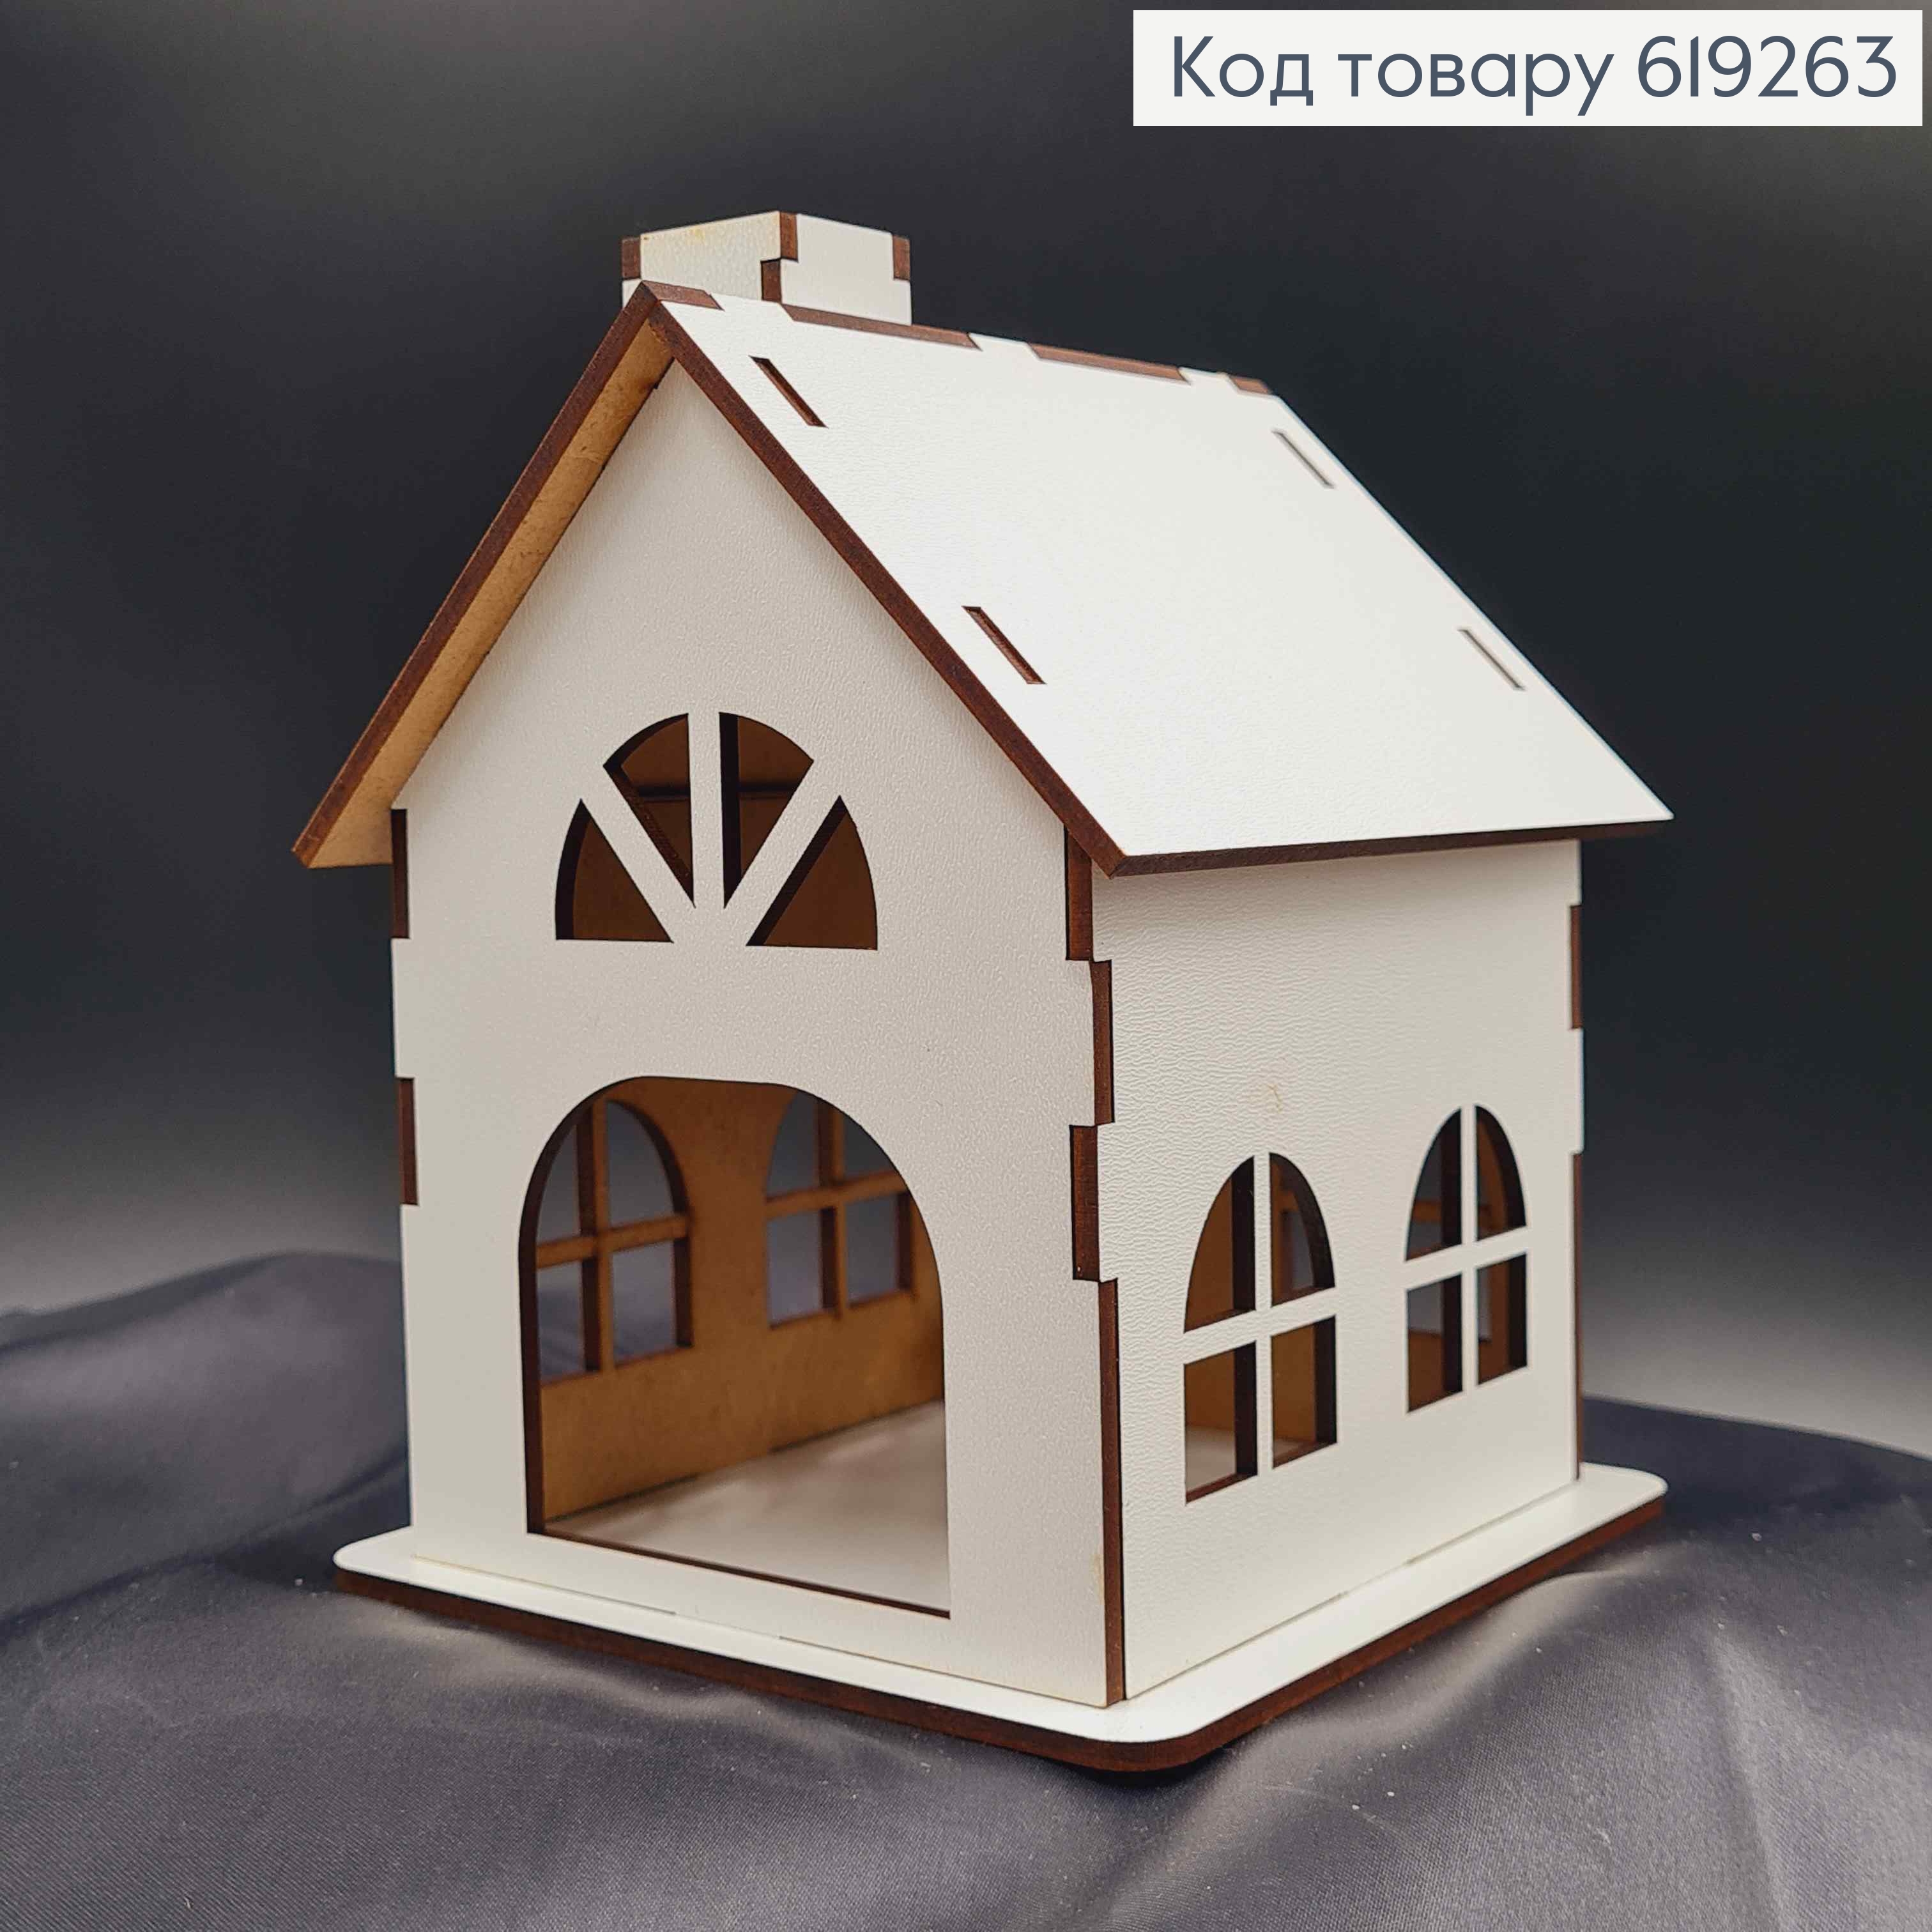 Подсвечник, деревянный белый домик, классический, 16*12см, Украина 619263 фото 2